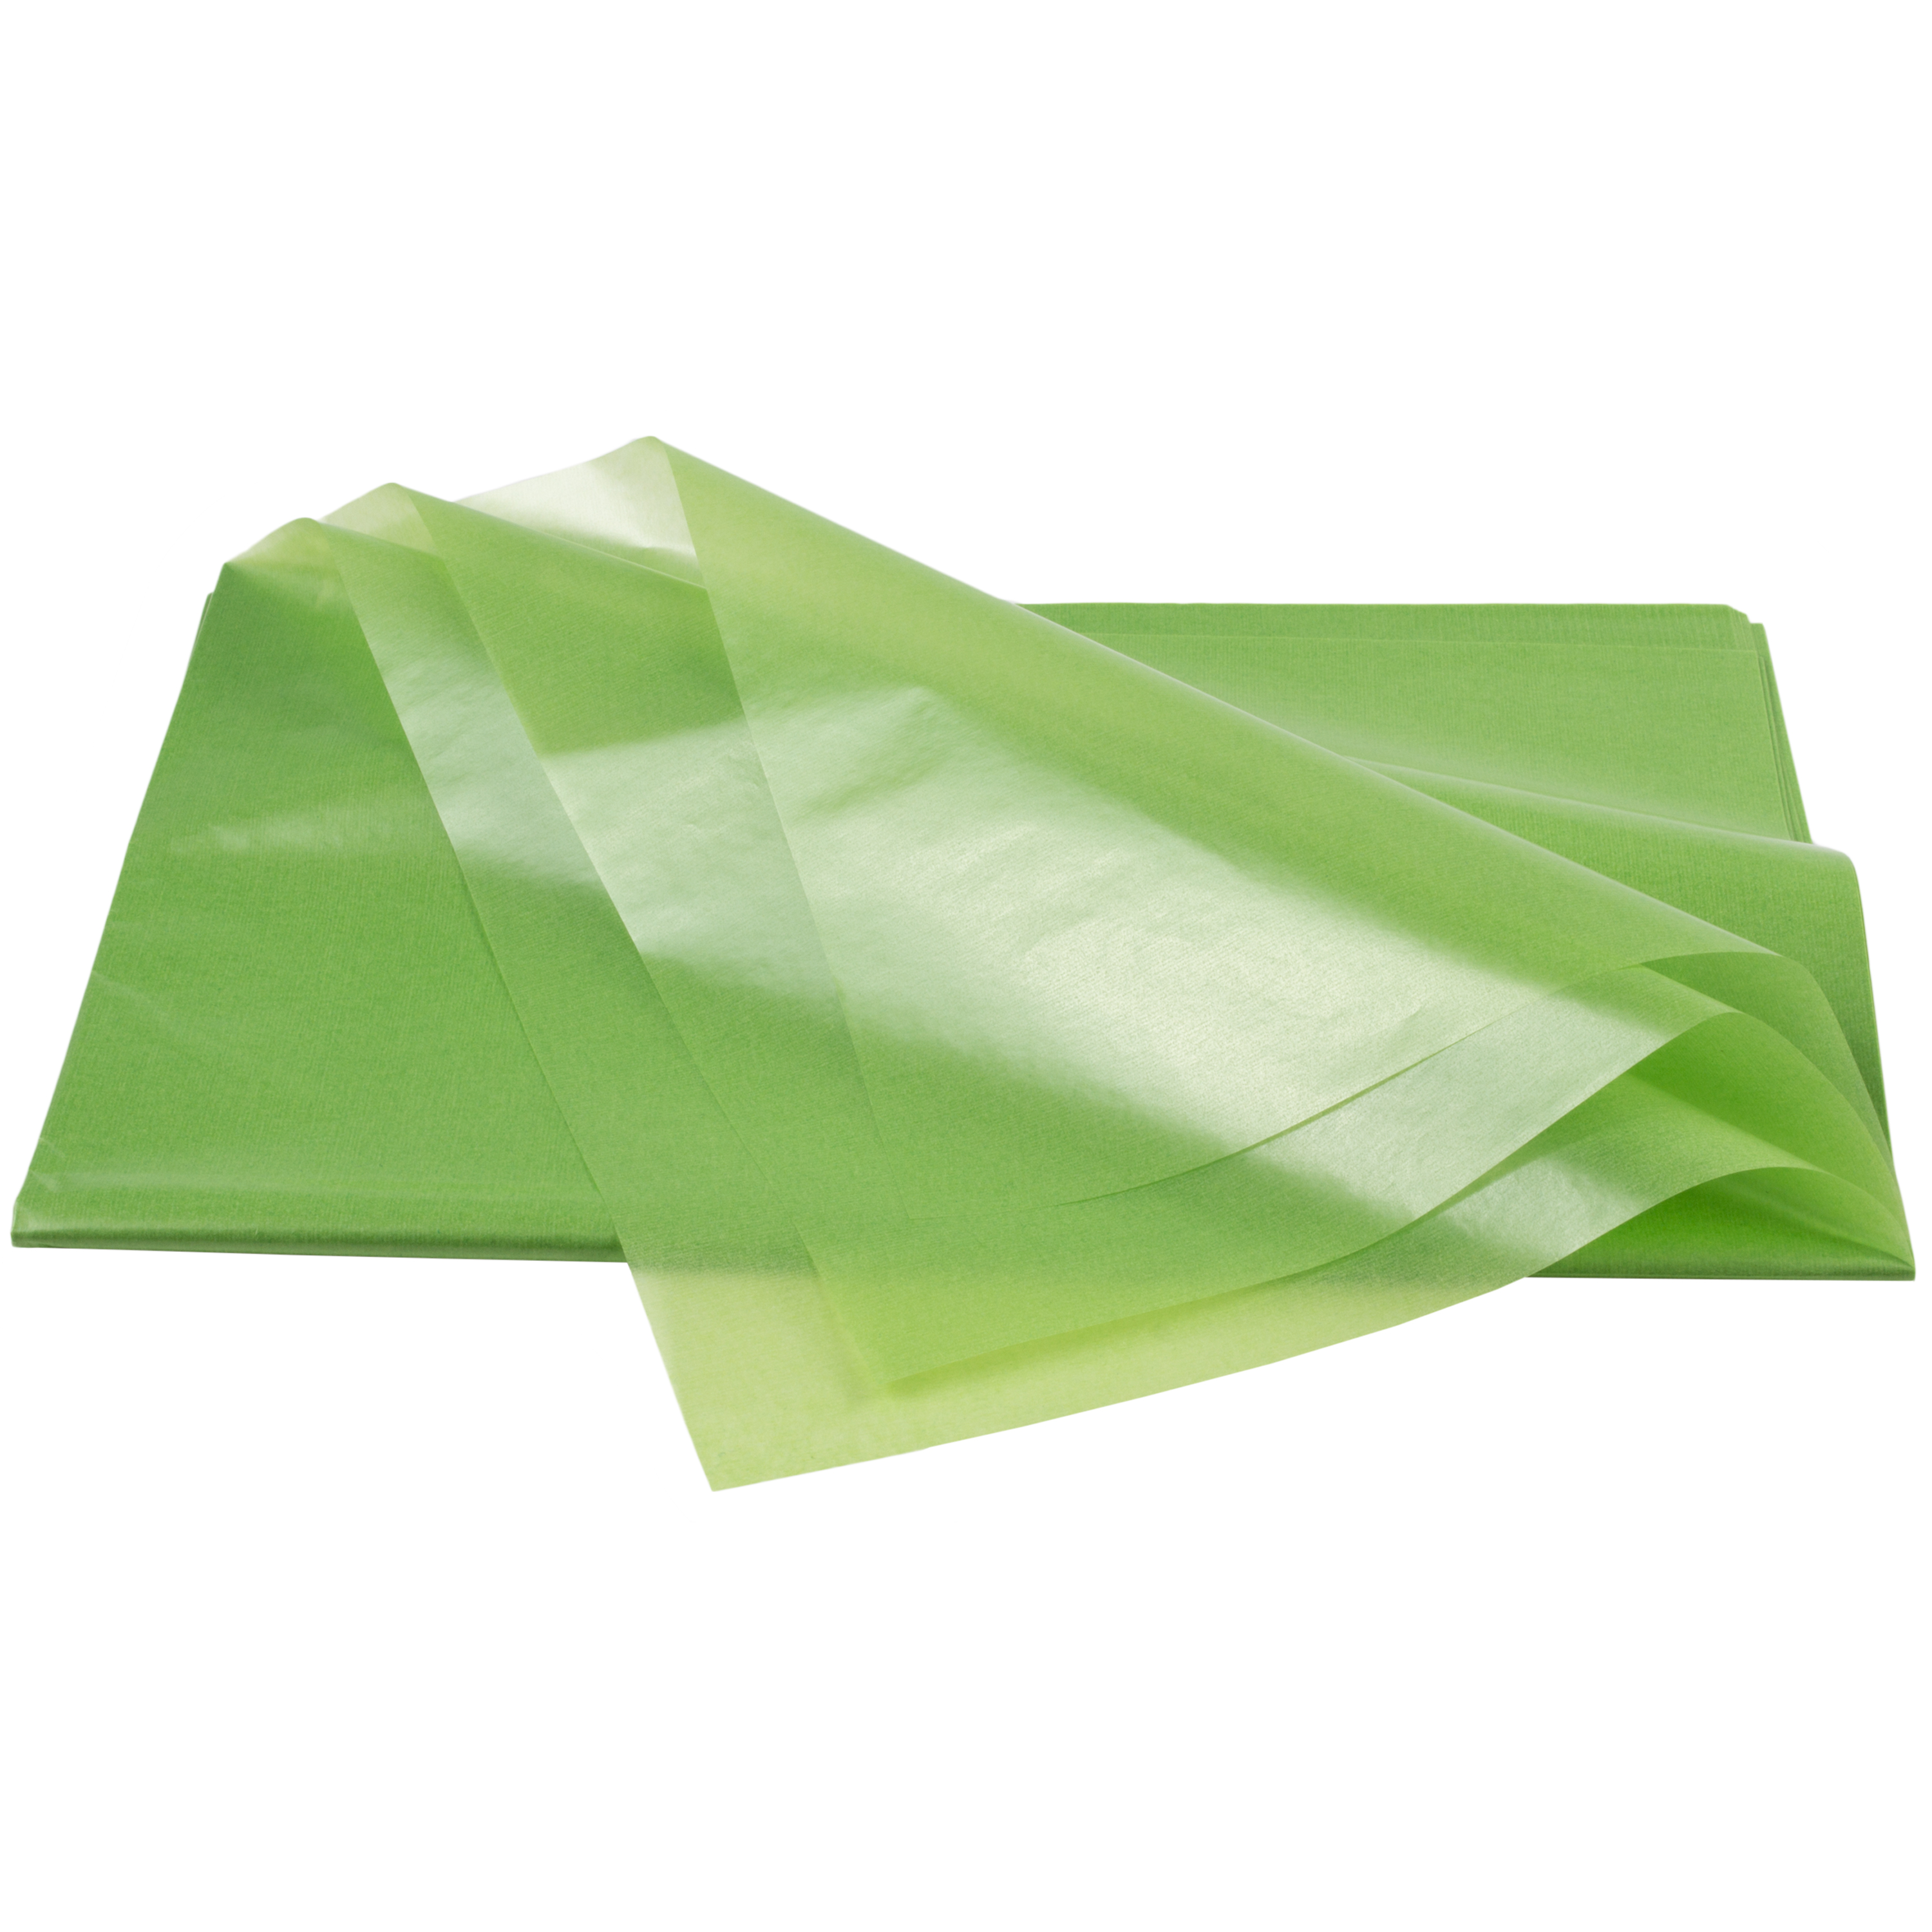 Transparentpapier hellgrün, 25 Bögen